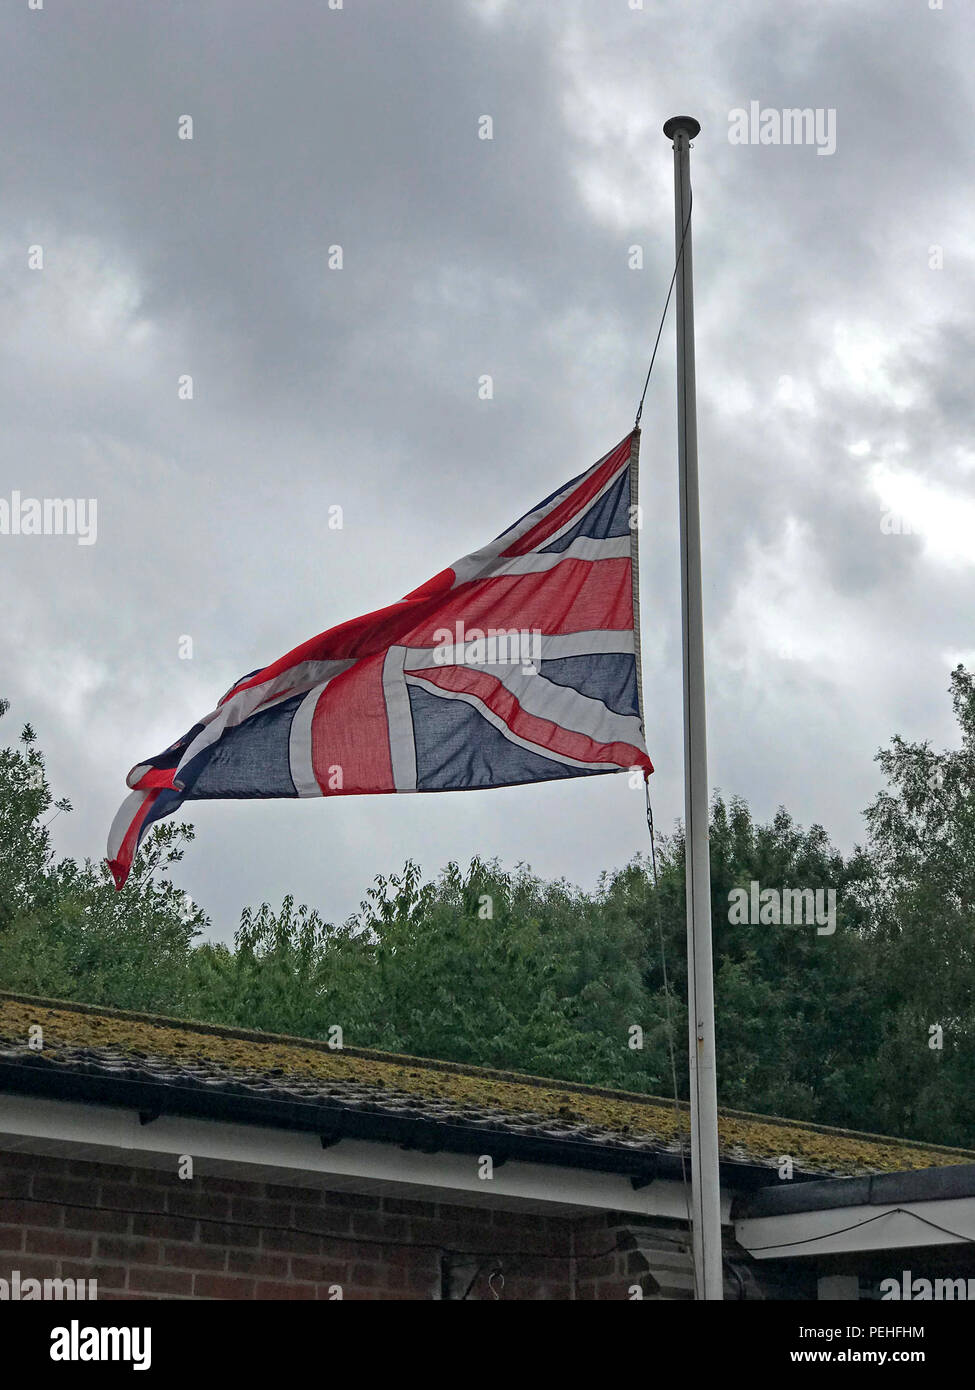 Bandiera europea, Unione Jack a mezz asta denota una morte, a Grappenhall & Thelwall British Legion, Warrington, Cheshire, North West England, Regno Unito Foto Stock